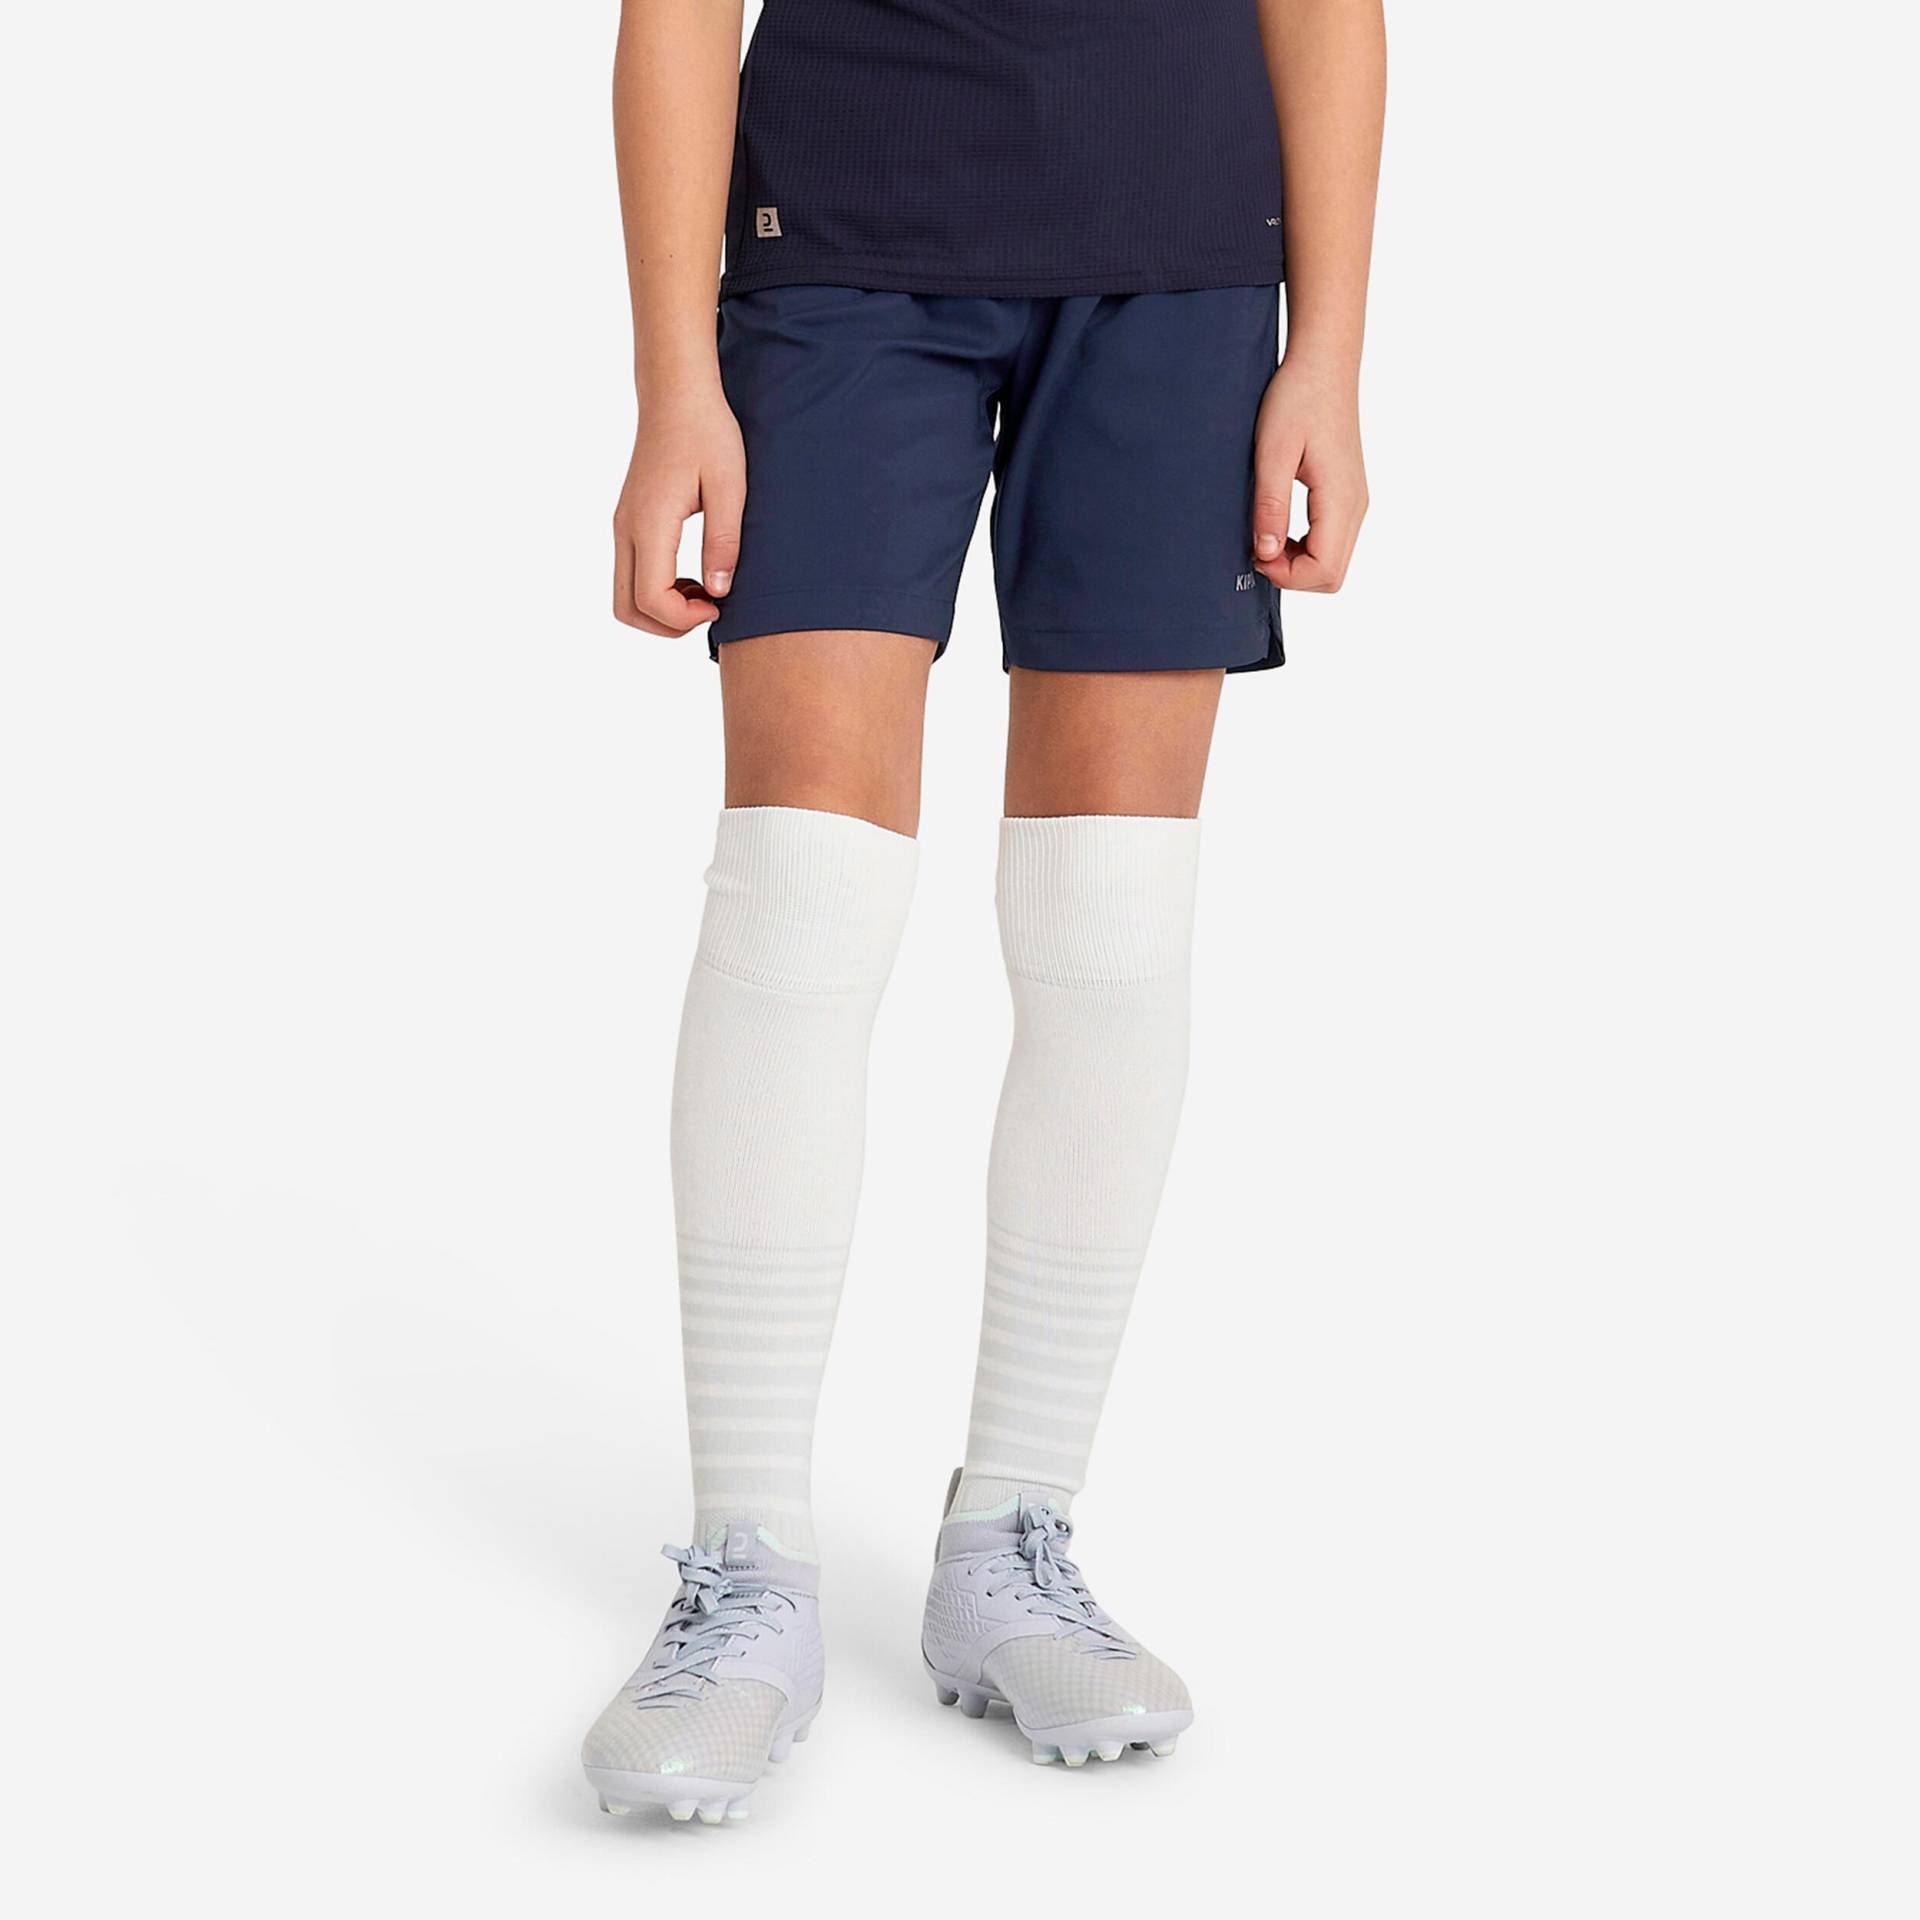 Mädchen Fussball Shorts - Viralto blau von KIPSTA